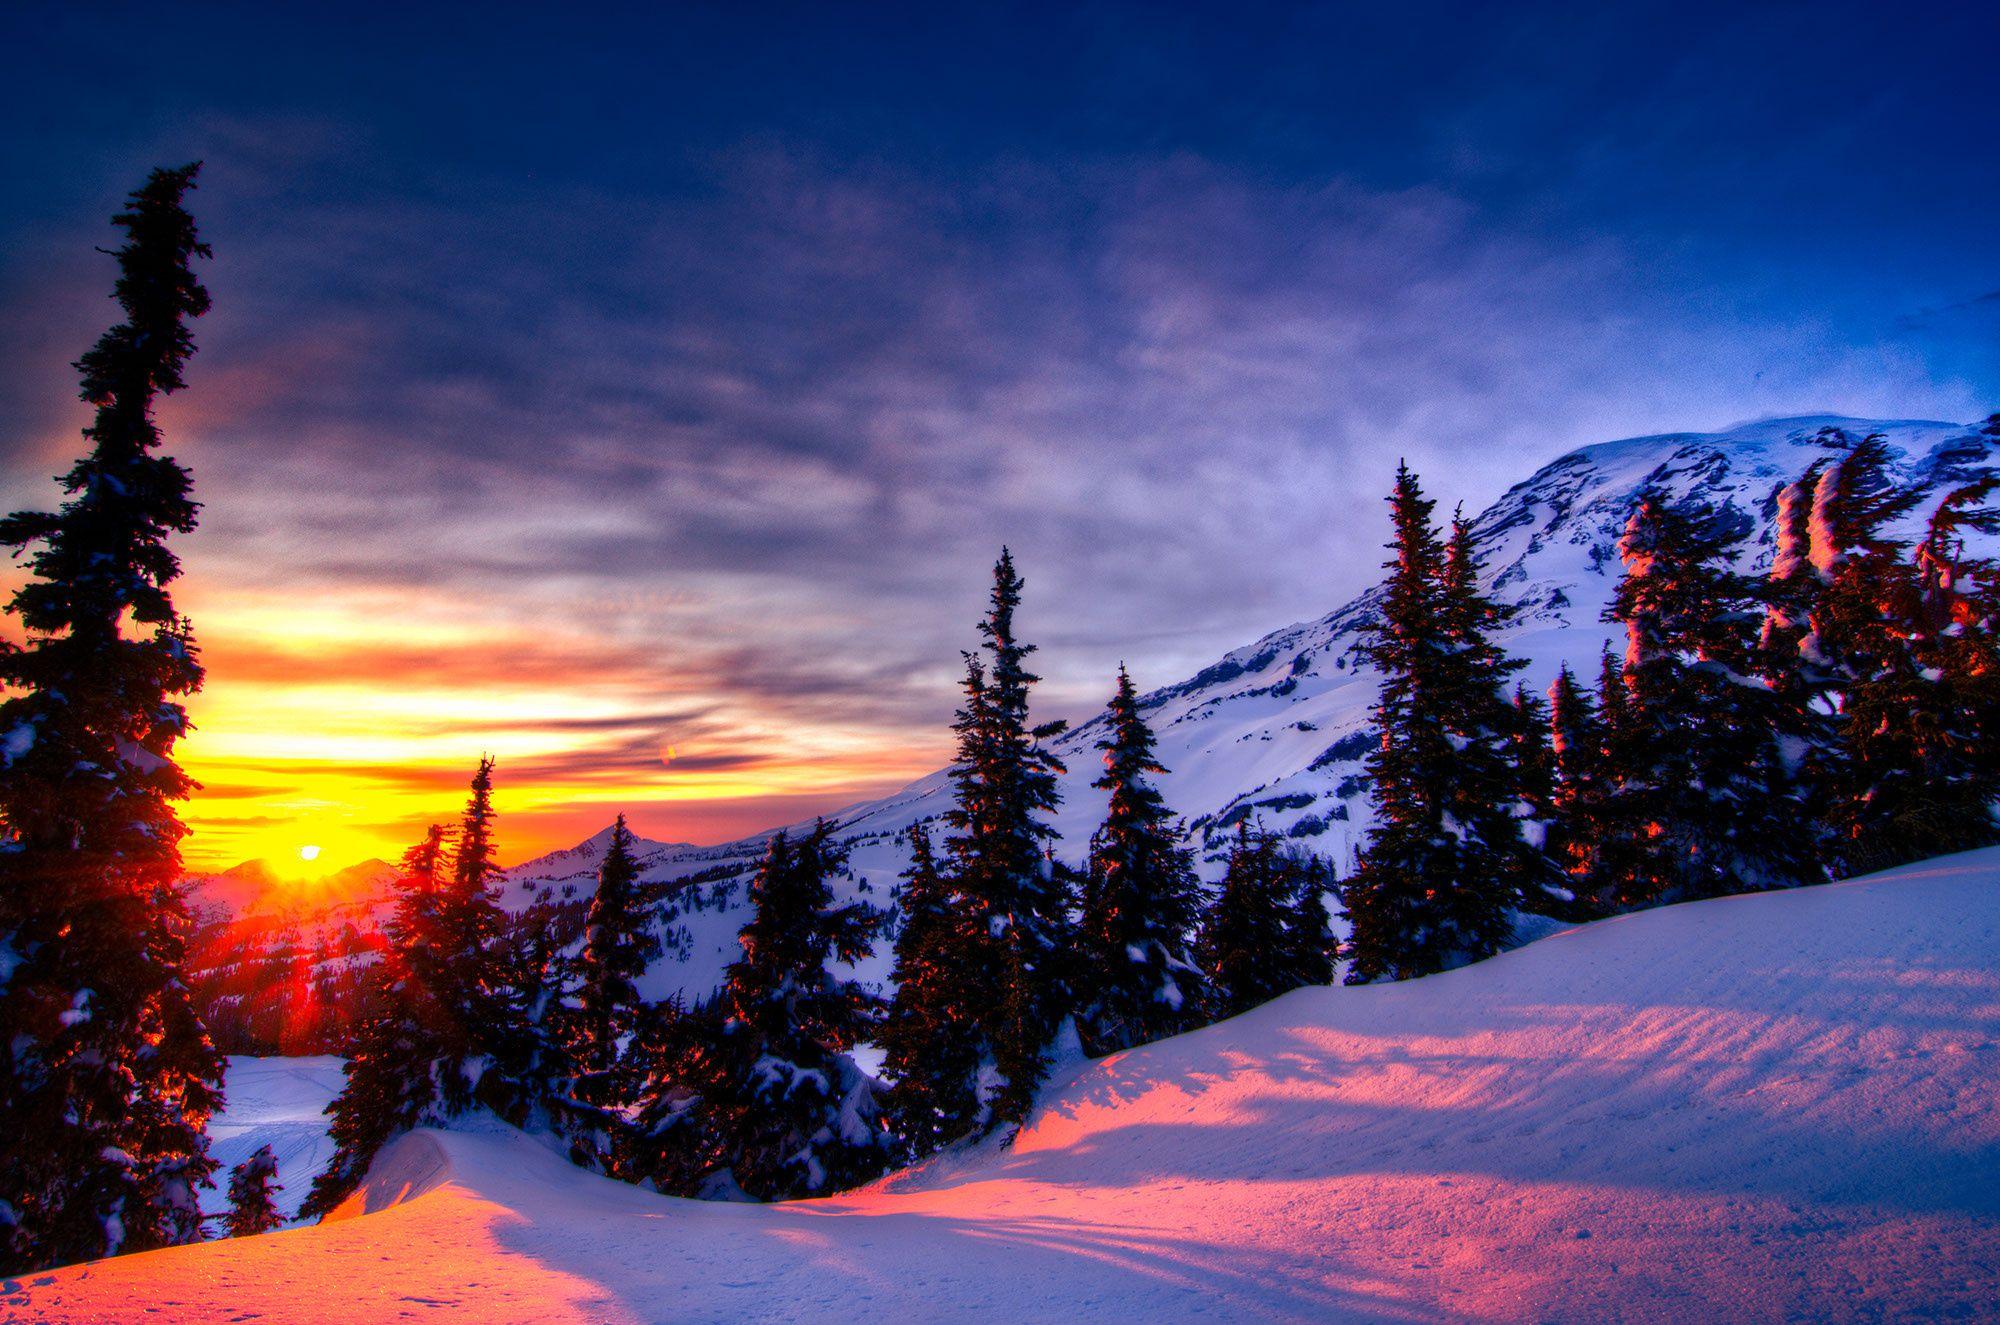 Sunset Winter Mountain Wallpaperwalpaperlist.com